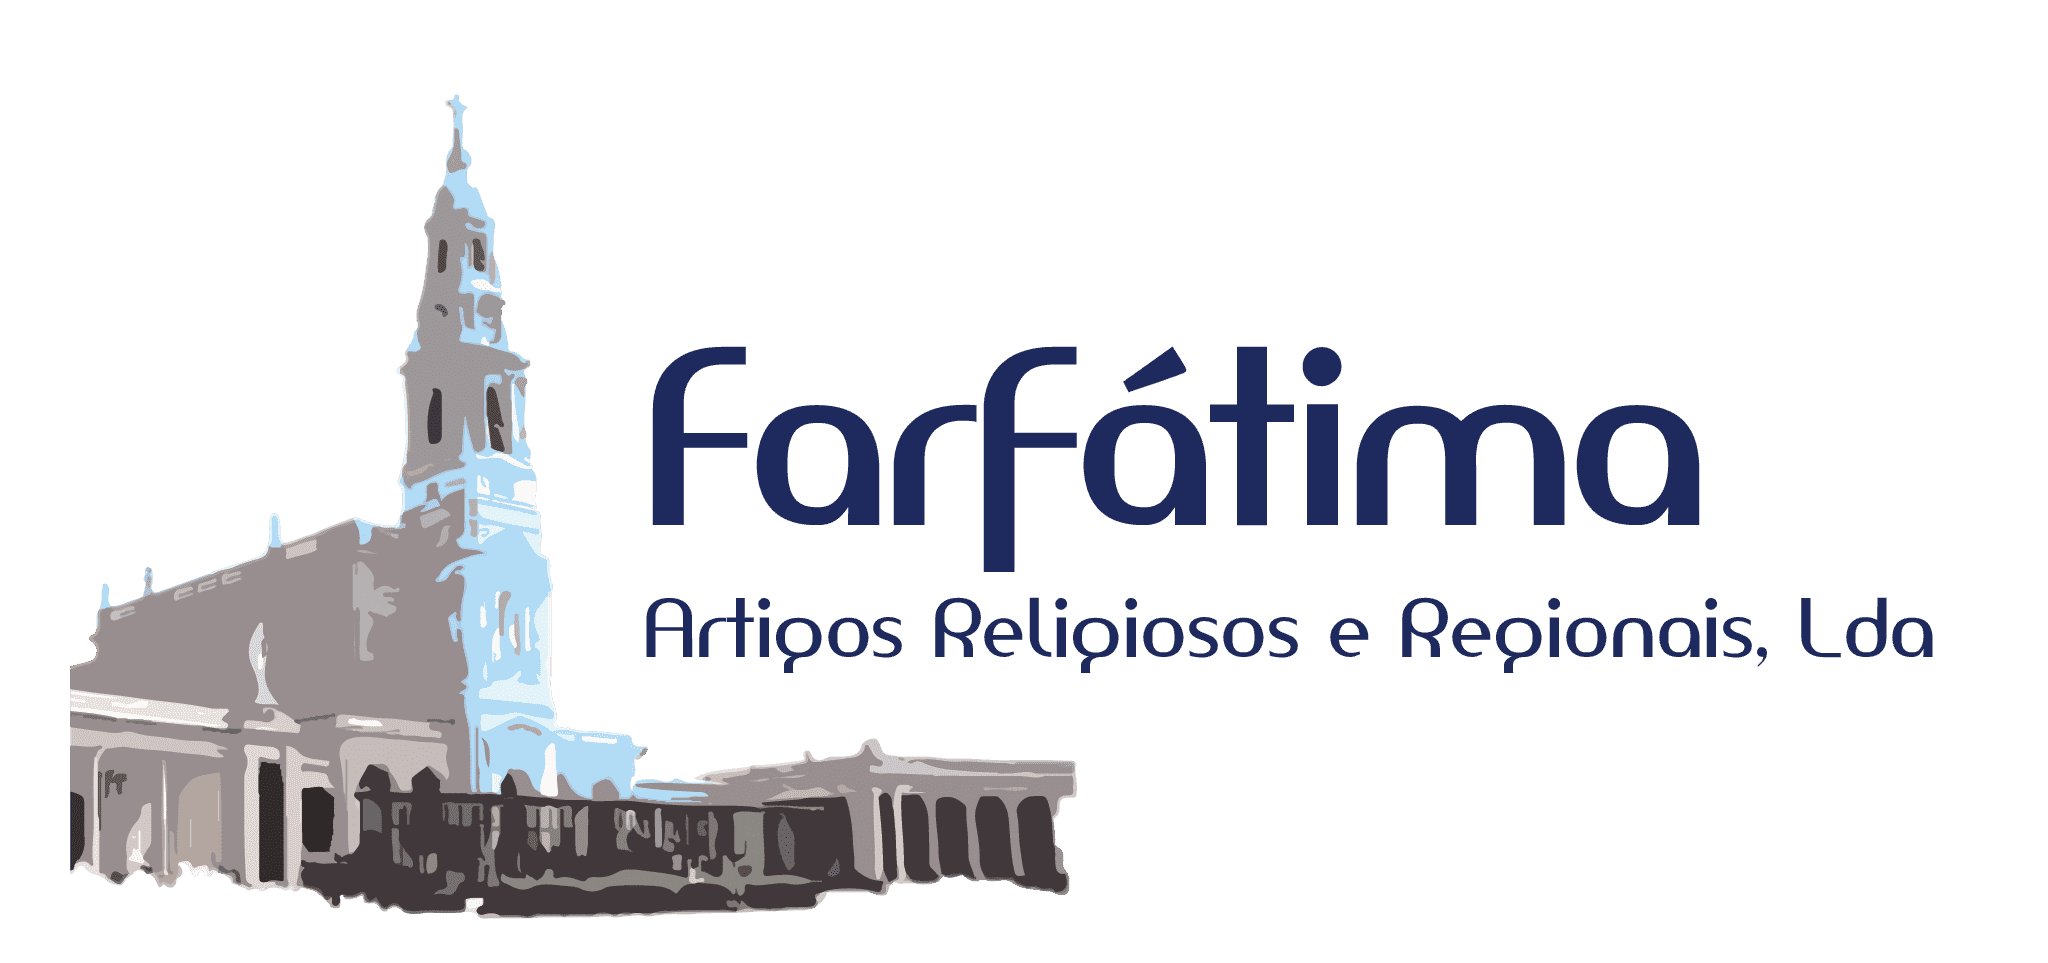 LOGO Farfátima